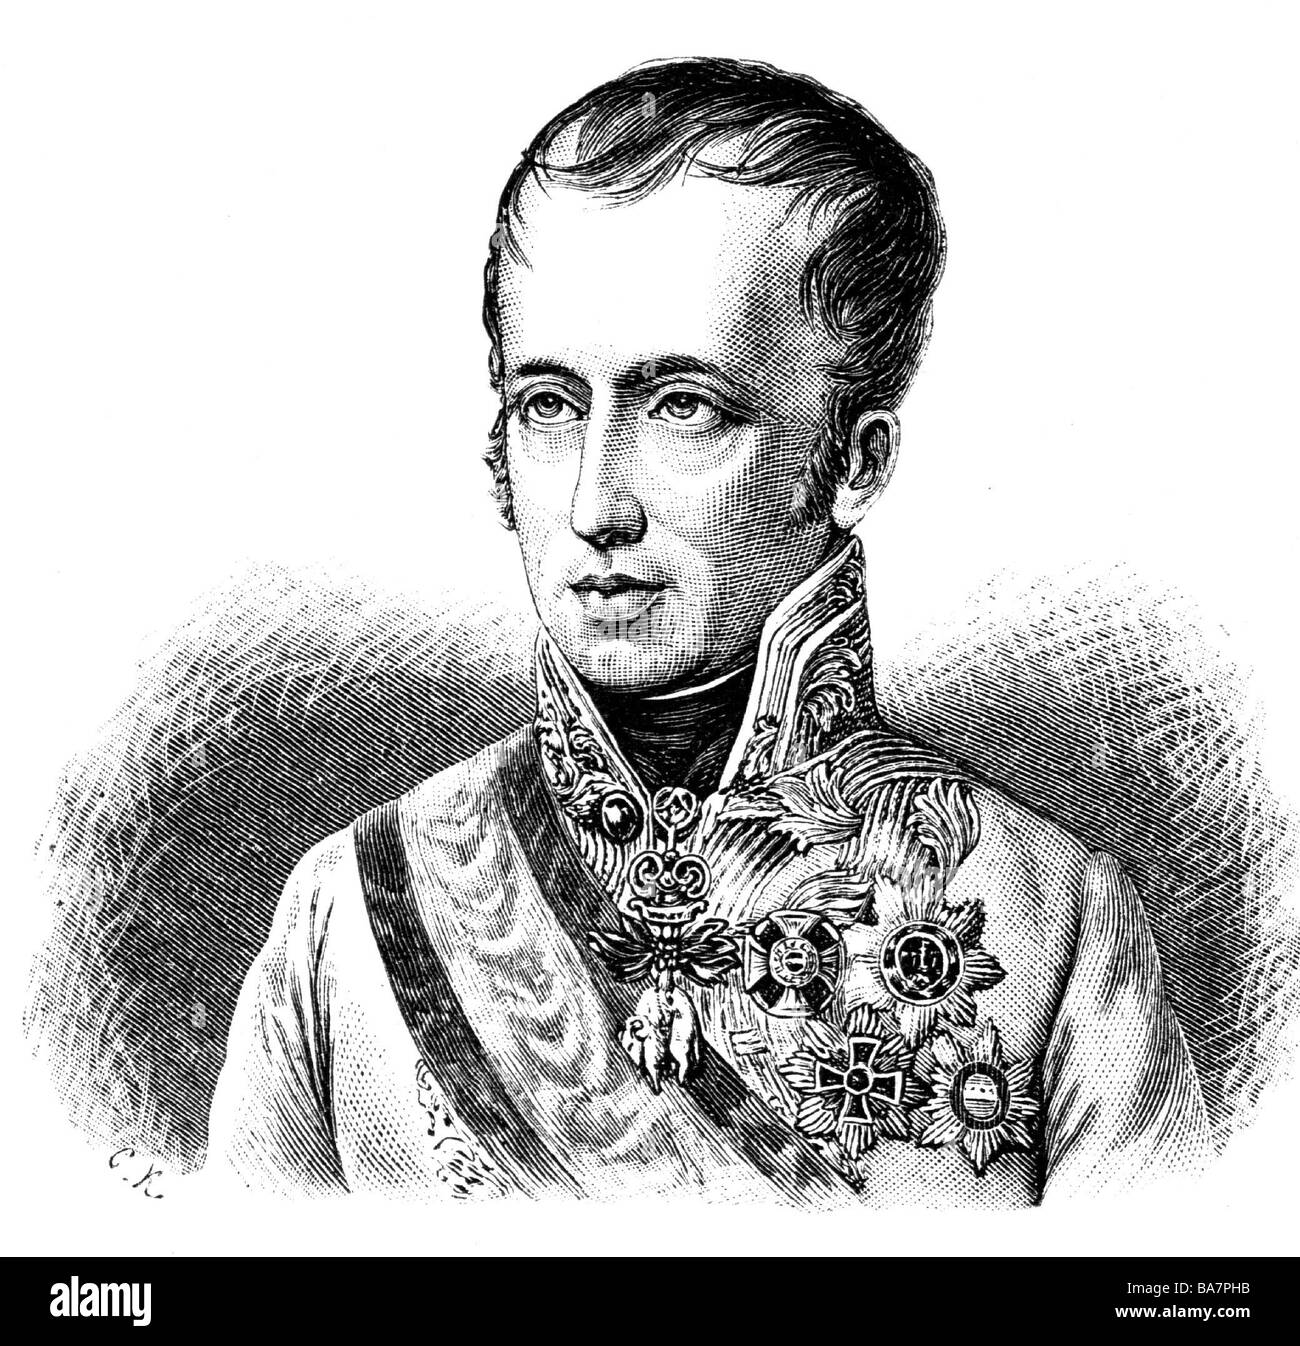 Ferdinando i, 19.4.1793 - 29.6.1875, Imperatore d'Austria (Re di Boemia e Ungheria Ferdinando V), ritratto, incisione in legno, 19th secolo, Foto Stock